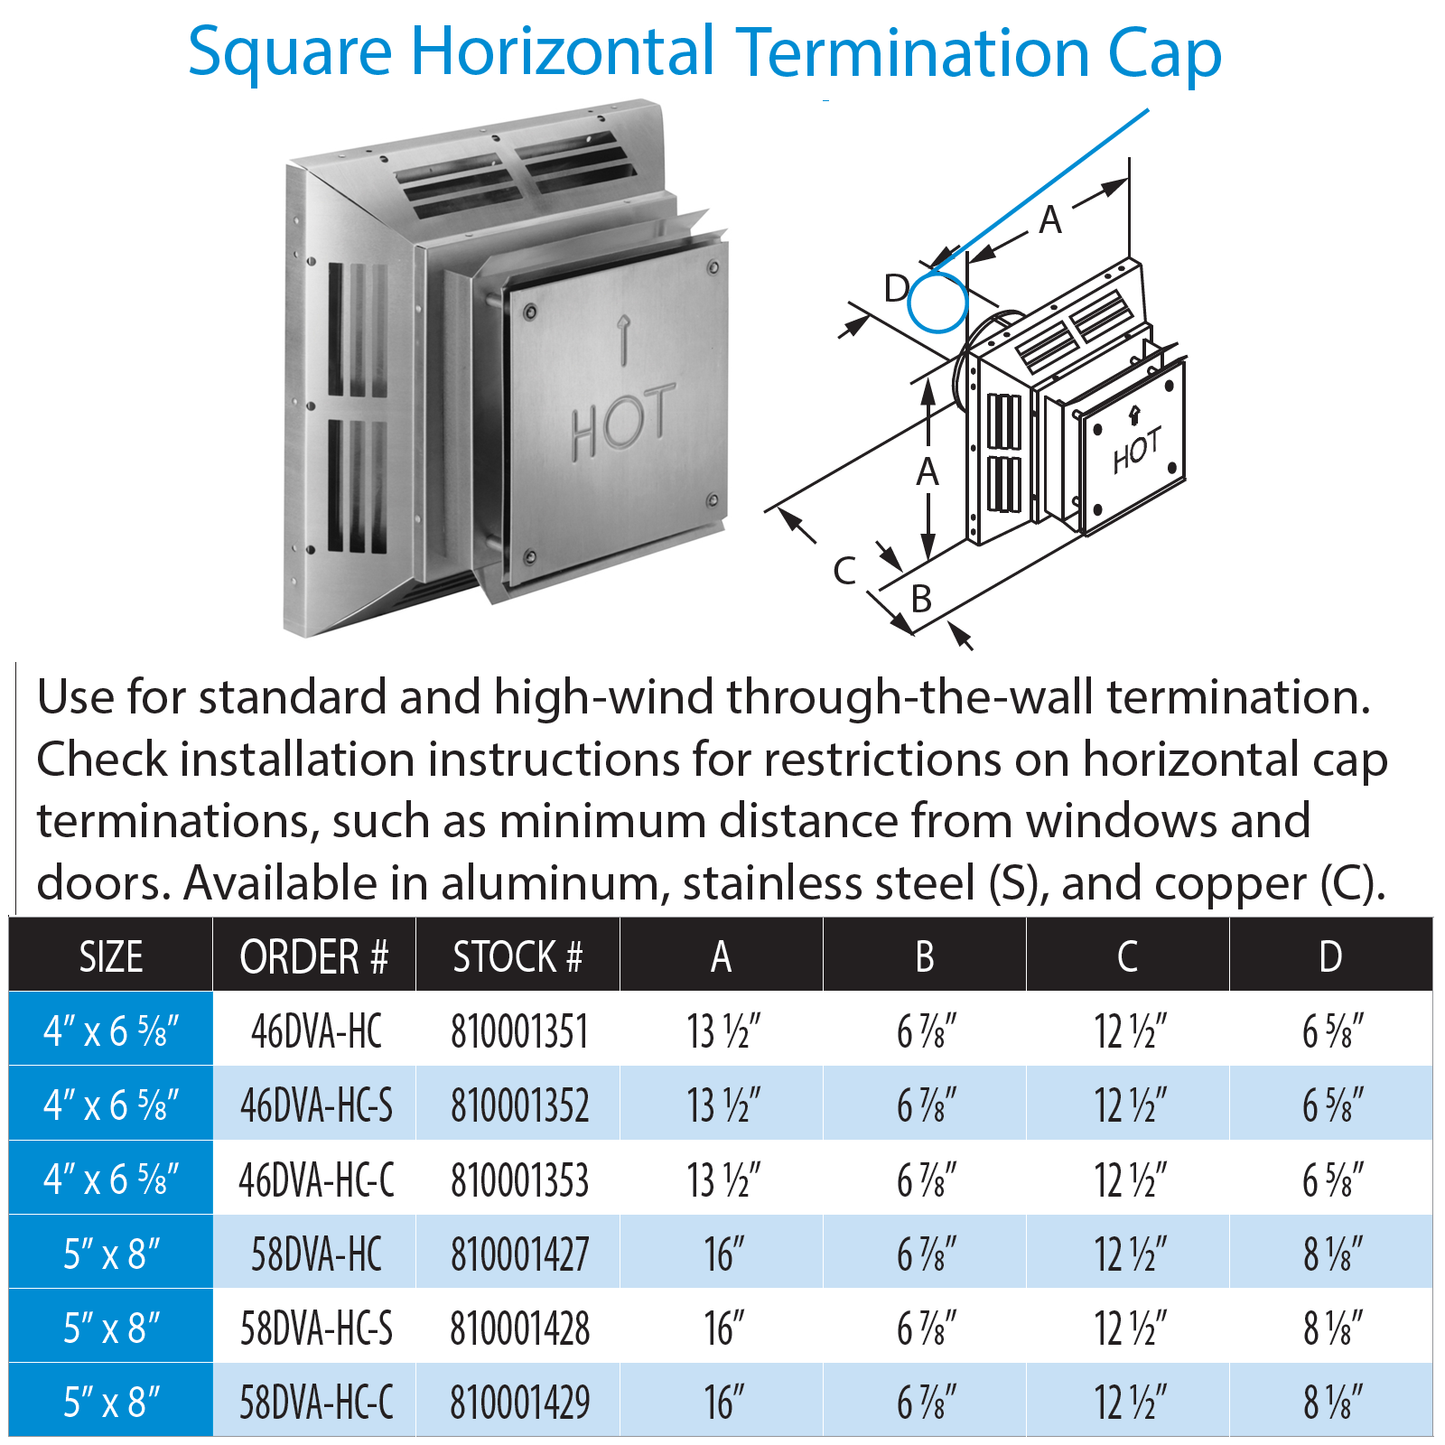 DuraVent DVP Square Horizontal Termination Cap Aluminum | 58DVA-HC